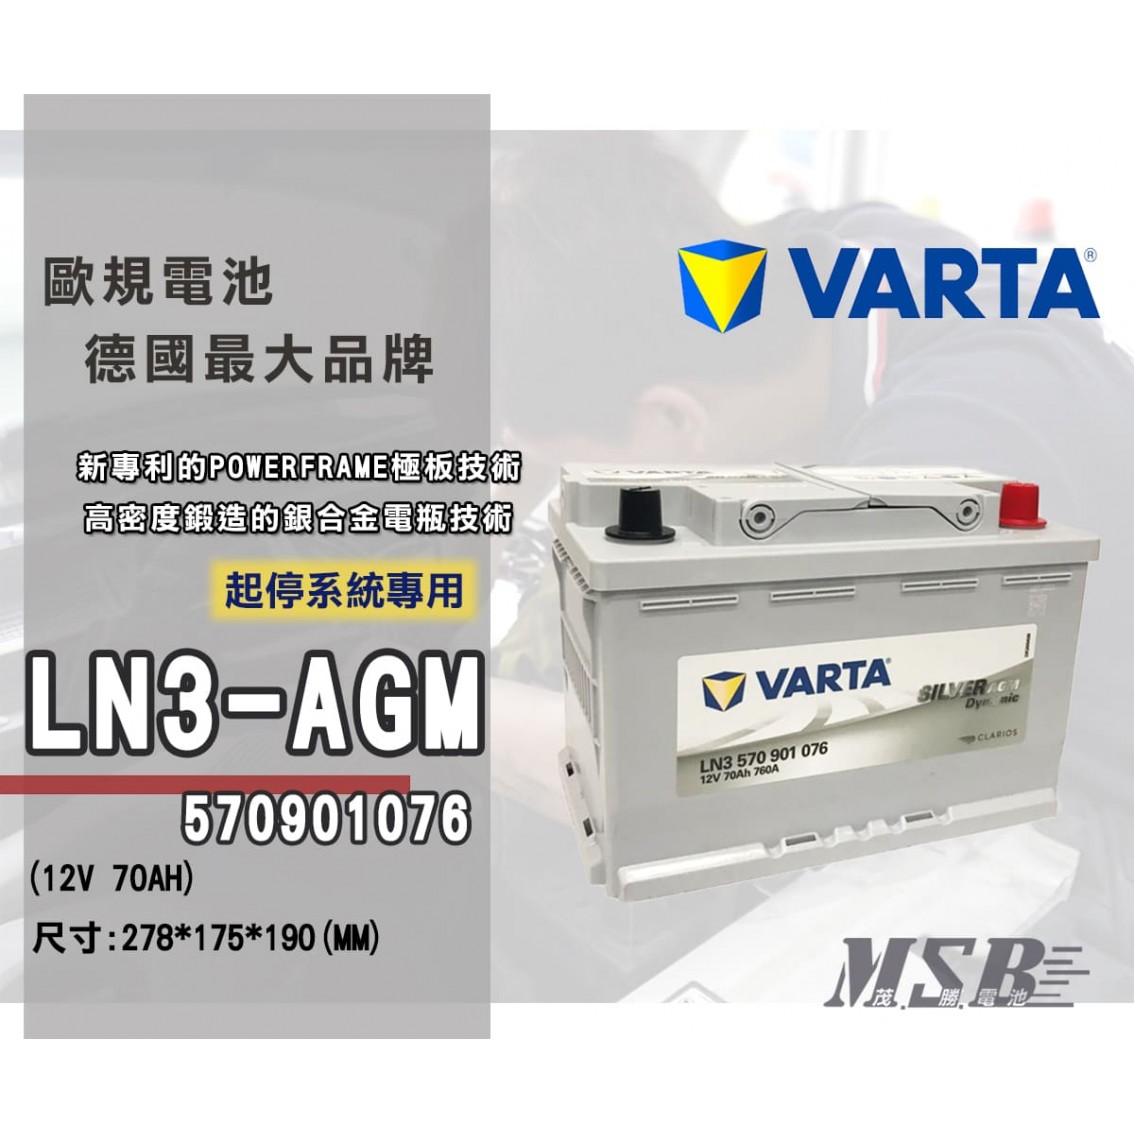 LN3-570901076-AGM